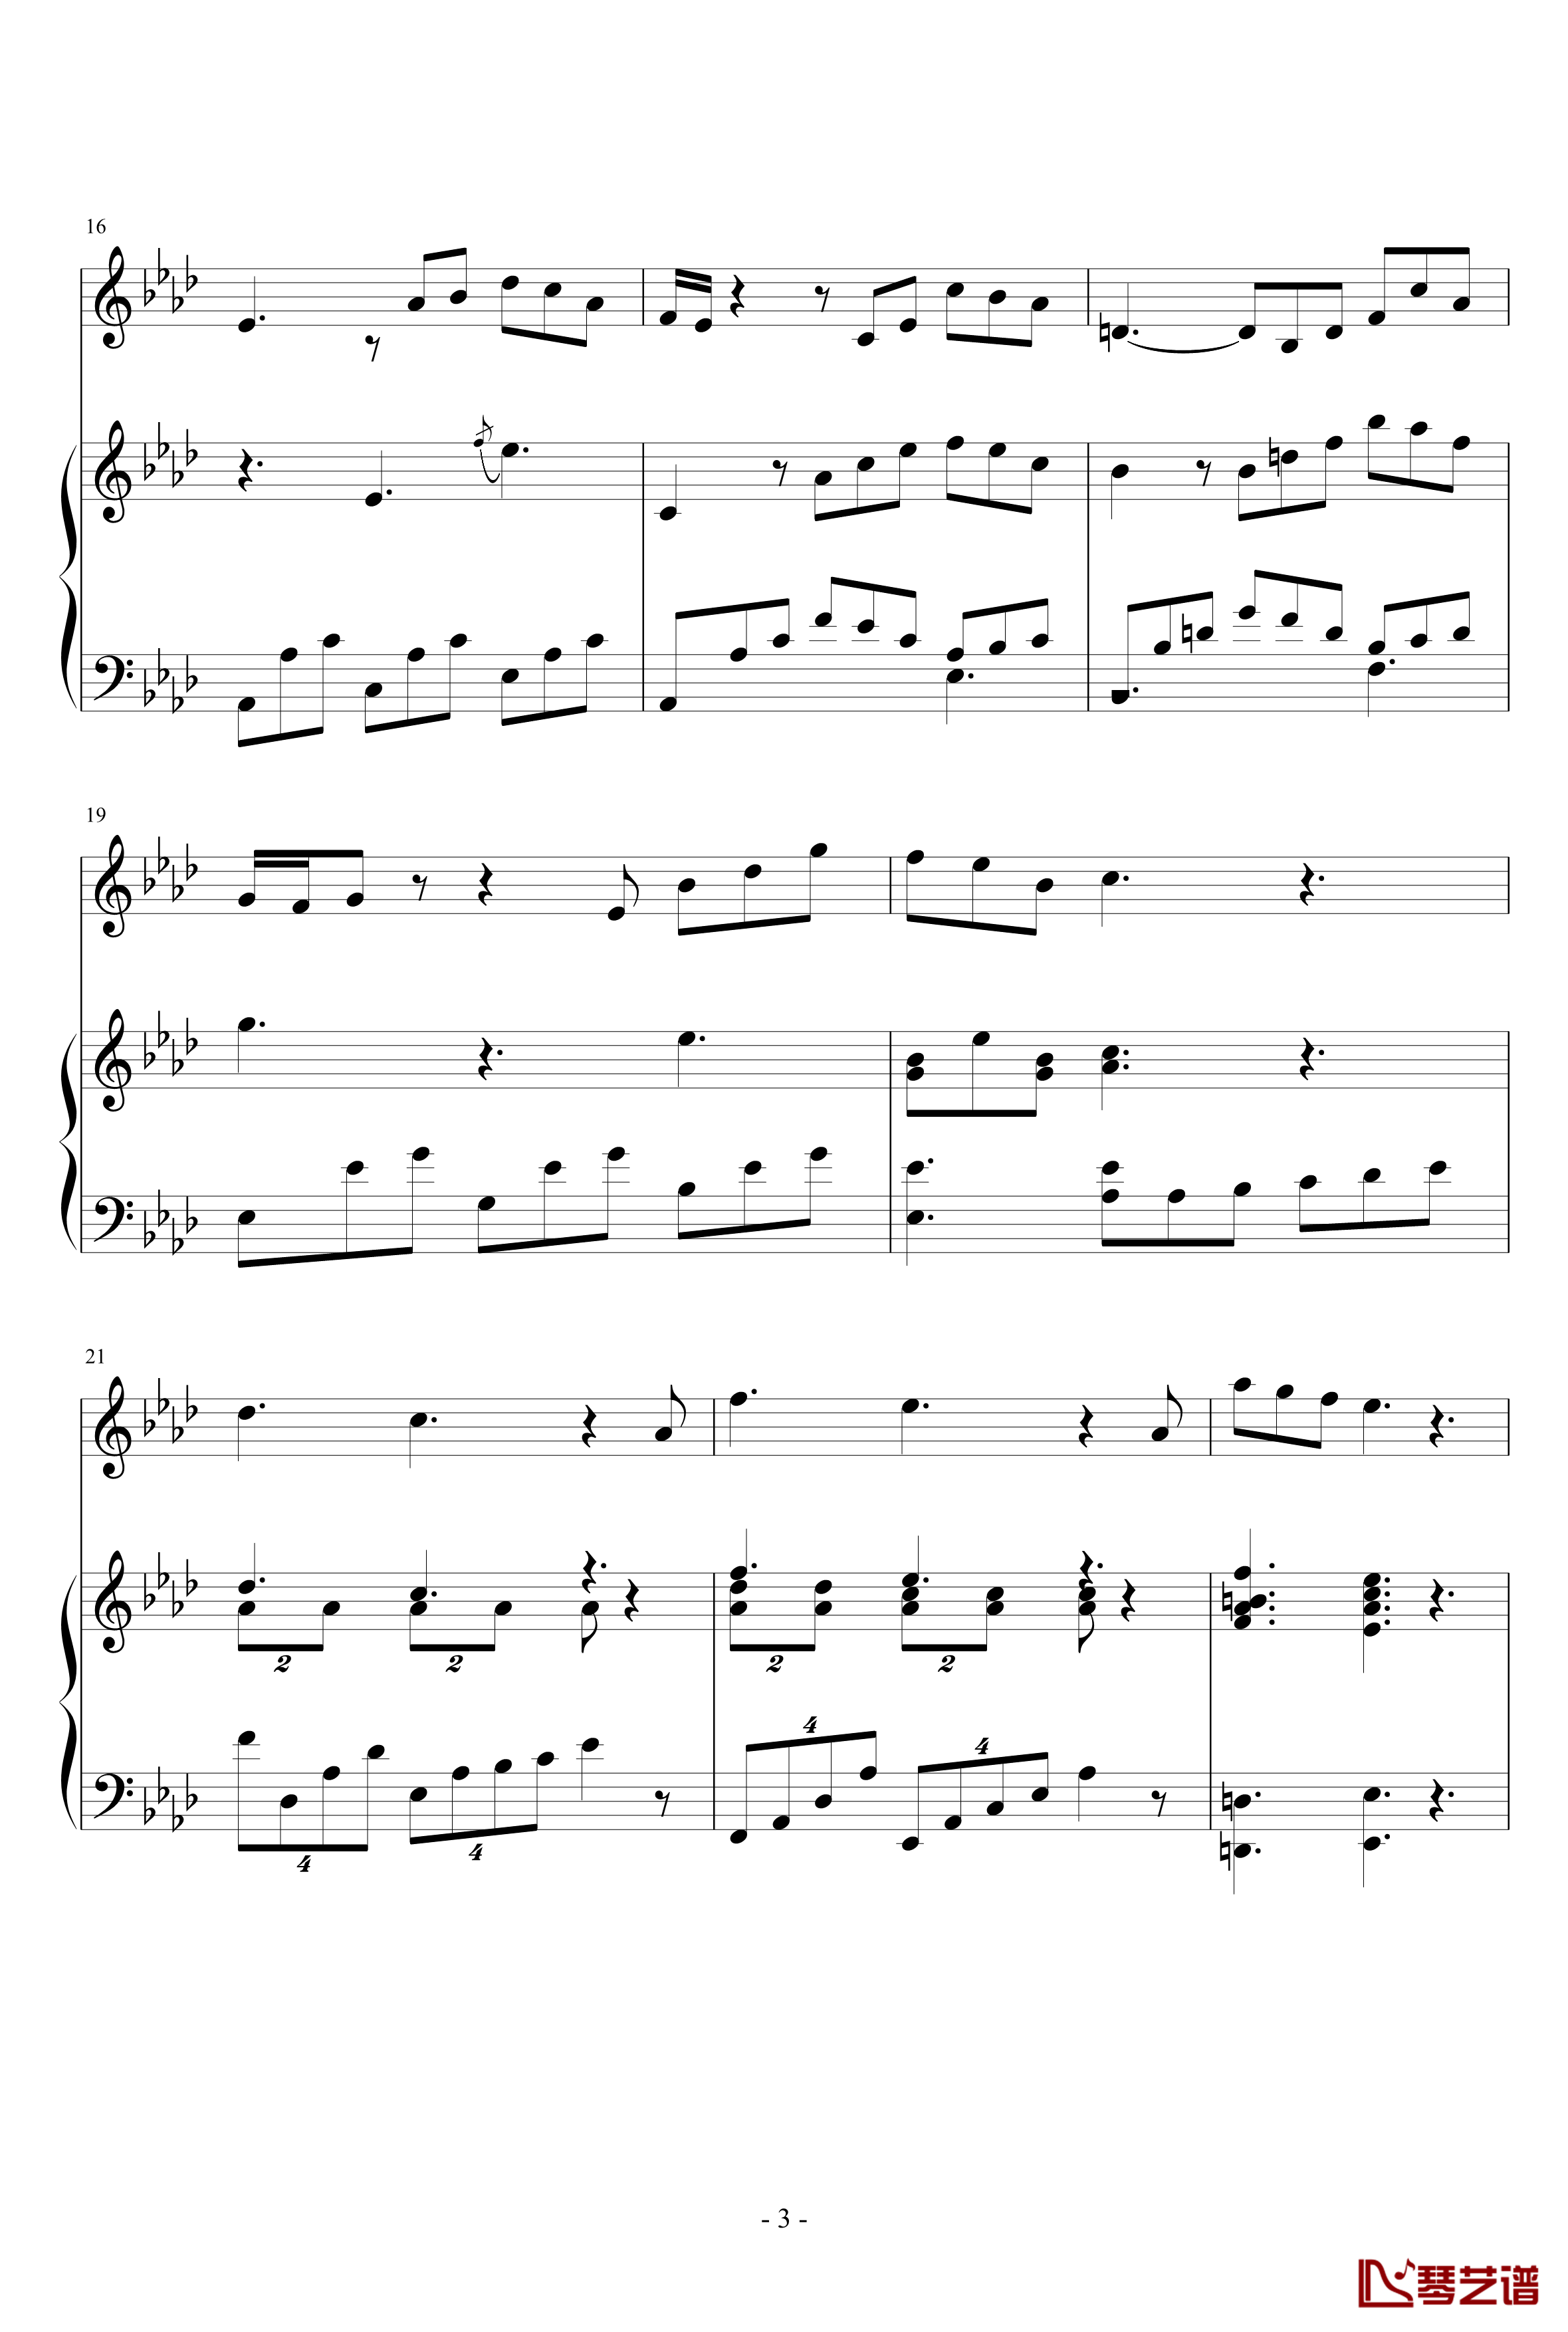 Art Song for winter钢琴谱-nzh19343